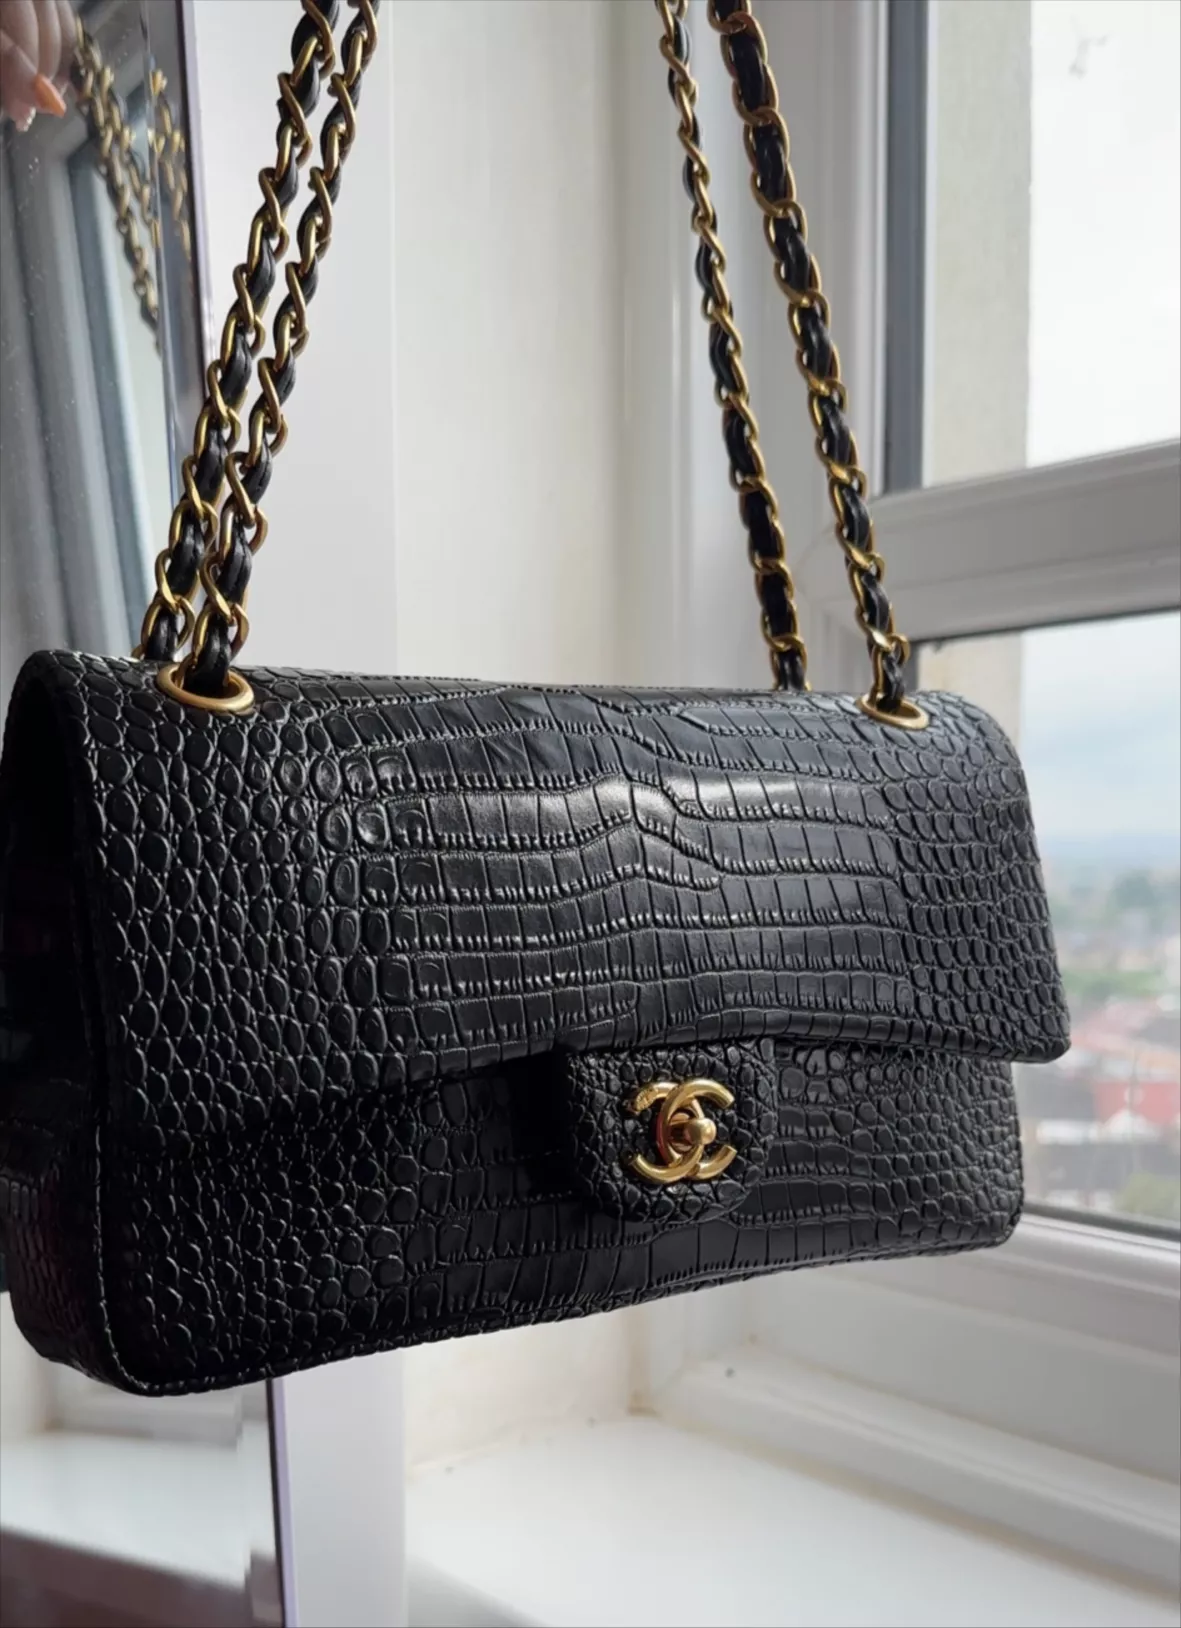 Chanel CHANEL Full flap croco shoulder bag leather black